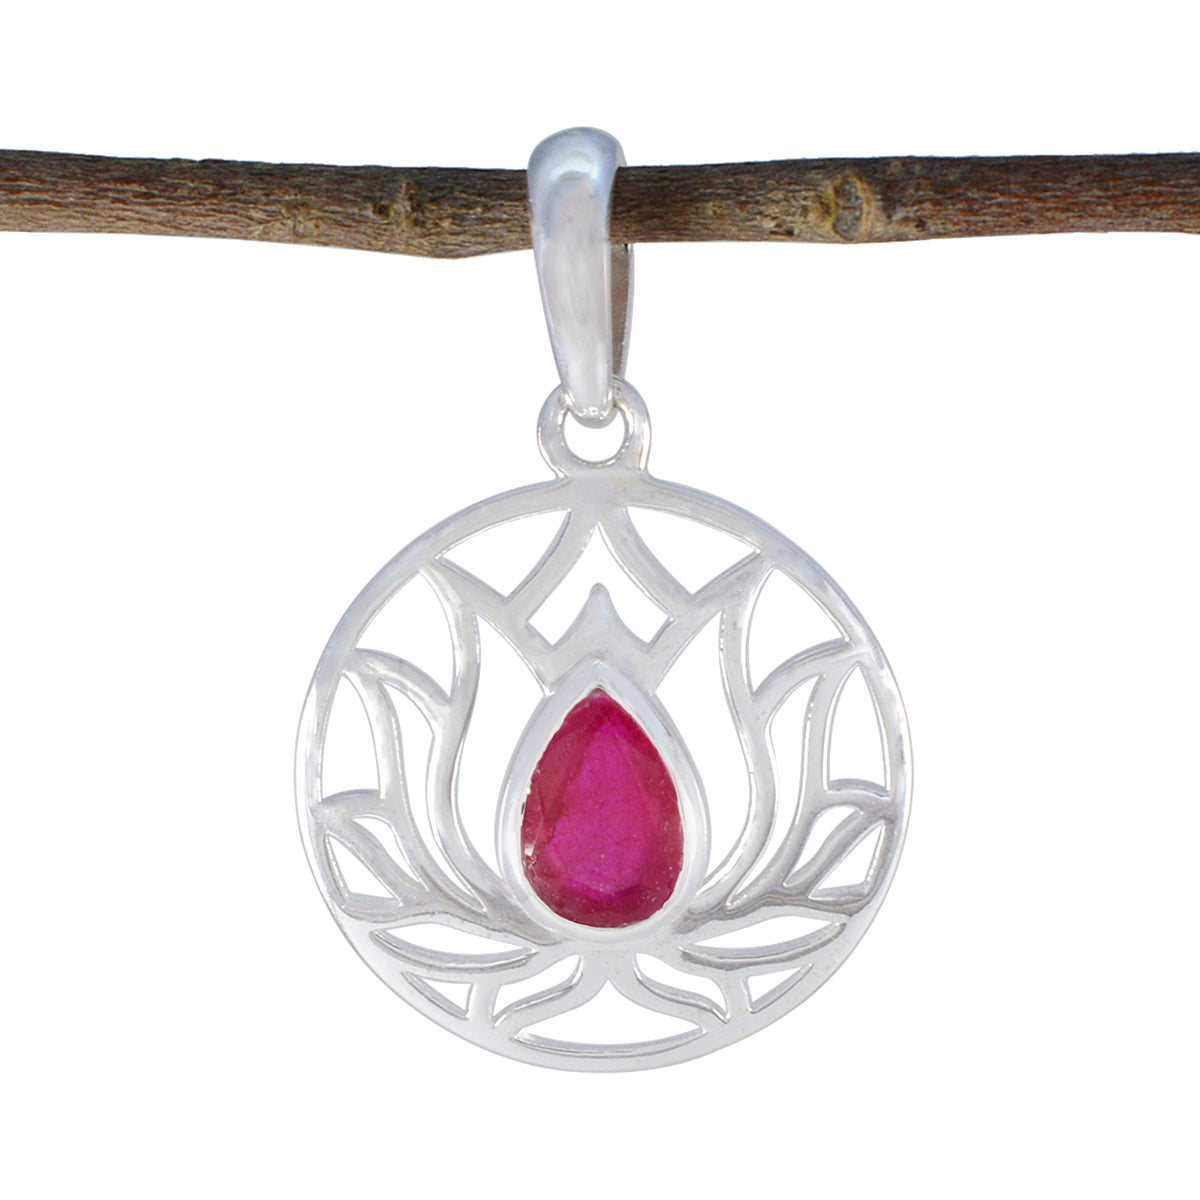 riyo grazioso ciondolo con pietra preziosa pera sfaccettata rosso rubino indiano in argento sterling, regalo di Natale